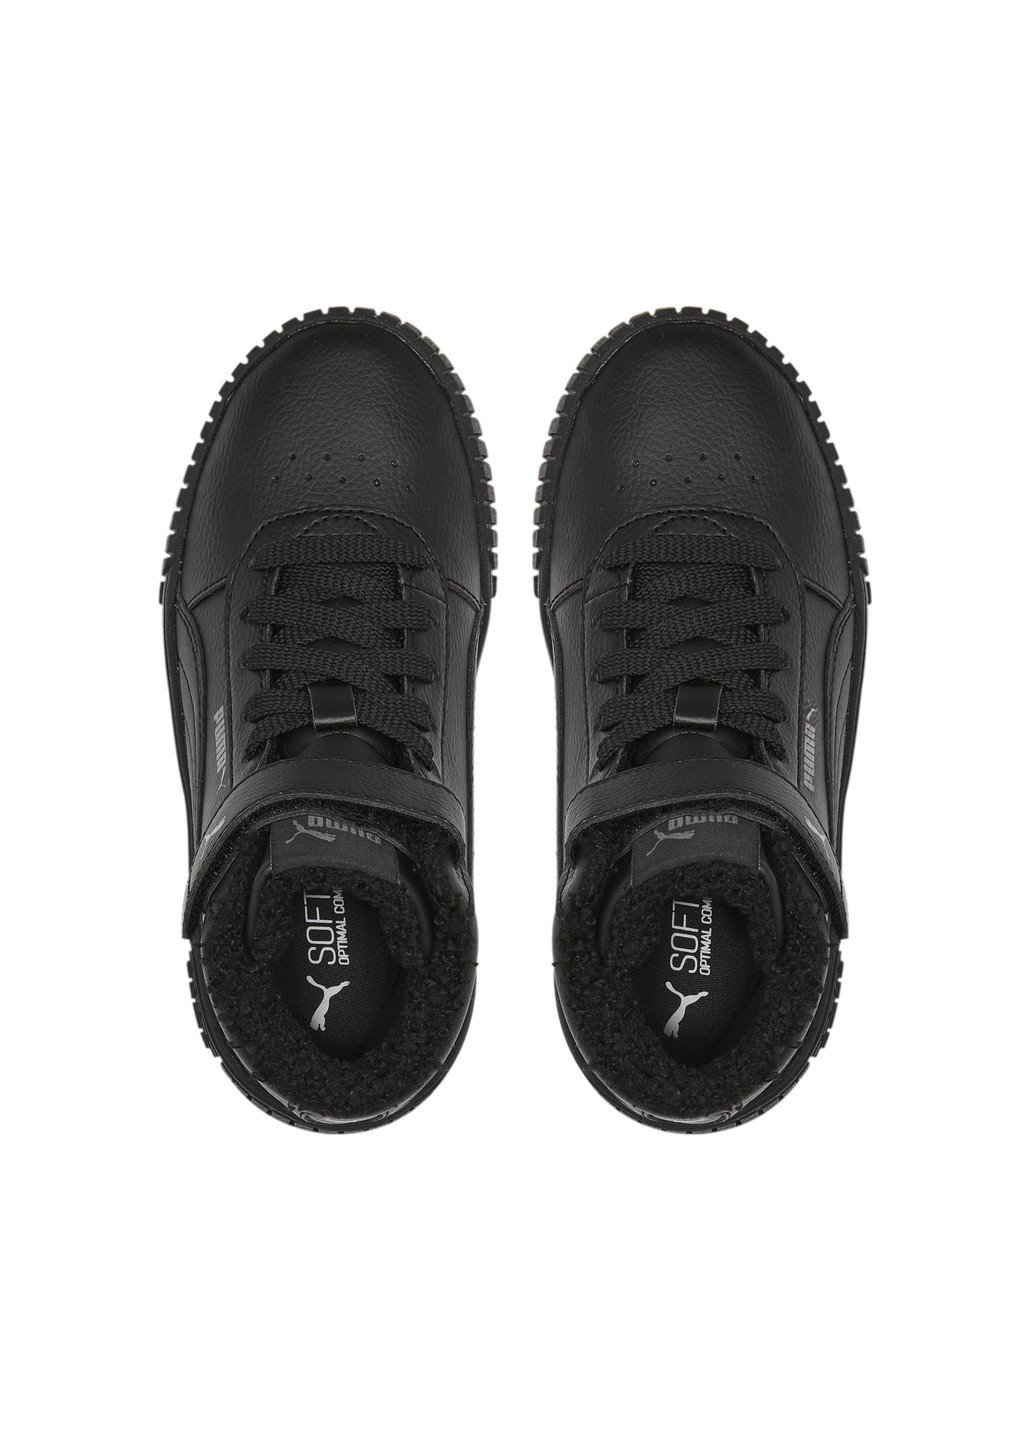 Черные детские кроссовки carina 2.0 mid winter sneakers kids Puma